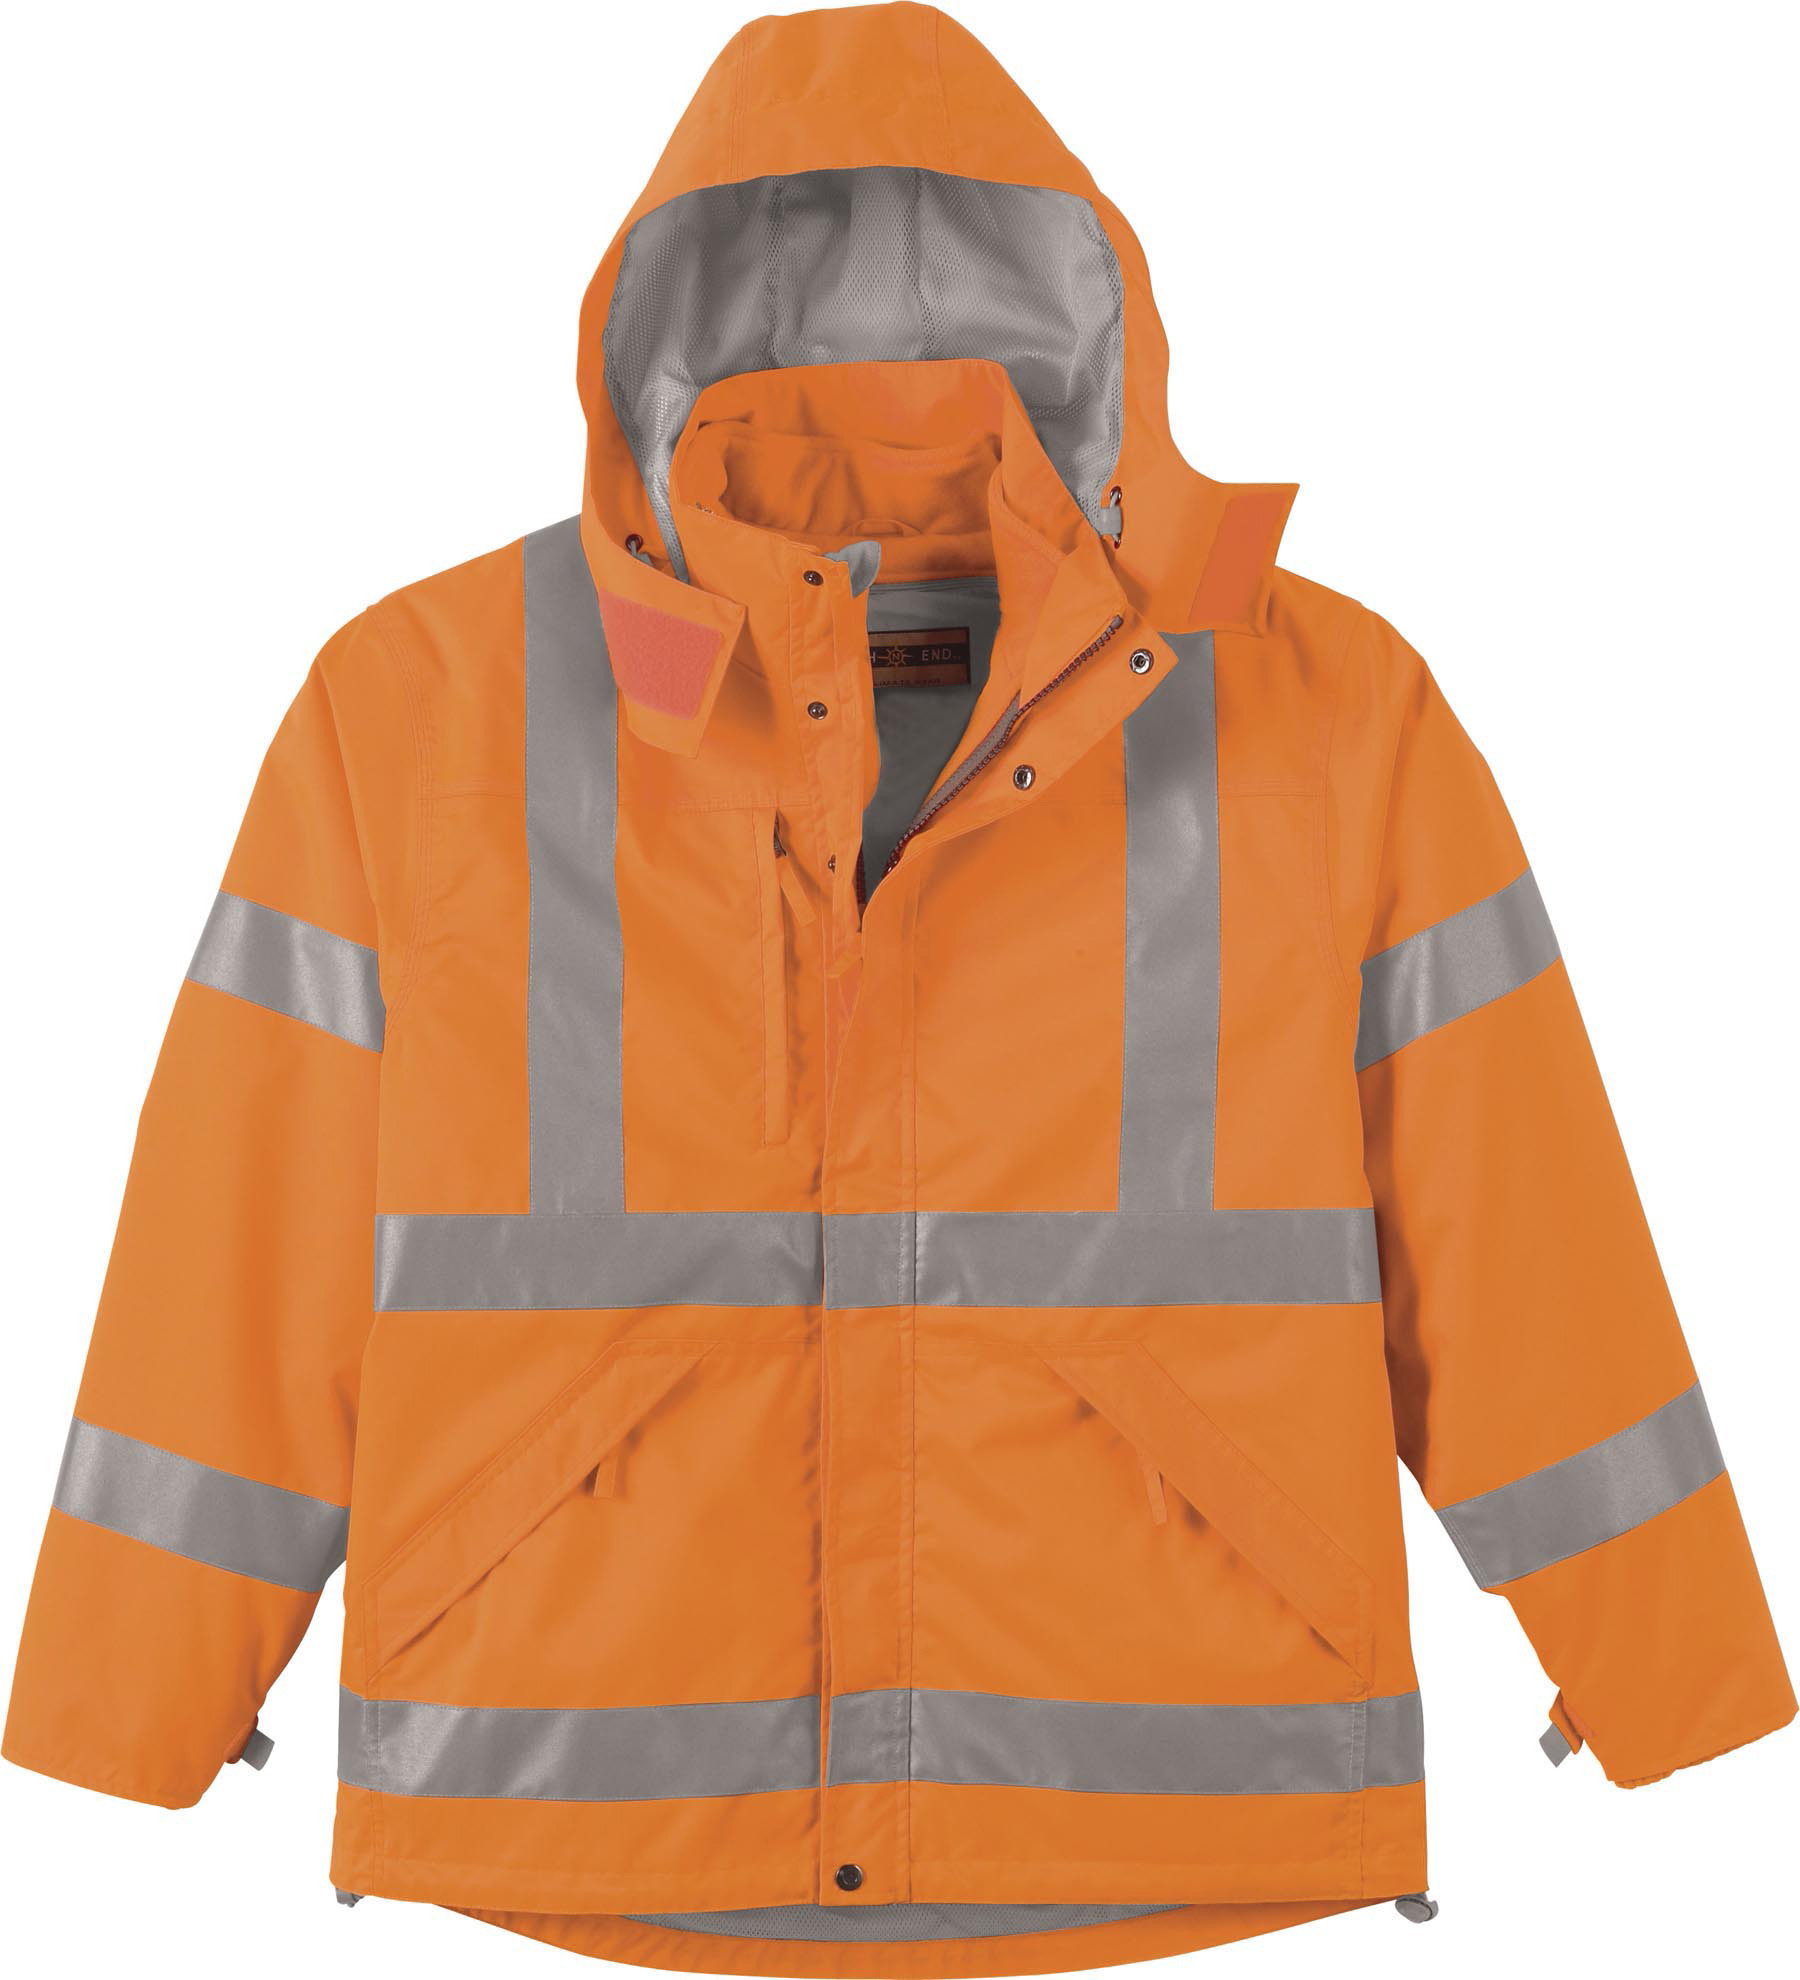 Ash City UTK 2 Warm.Logik 88707 - Men's 3-In-1 Vertical Stripe Safety Jacket With Fleece Liner